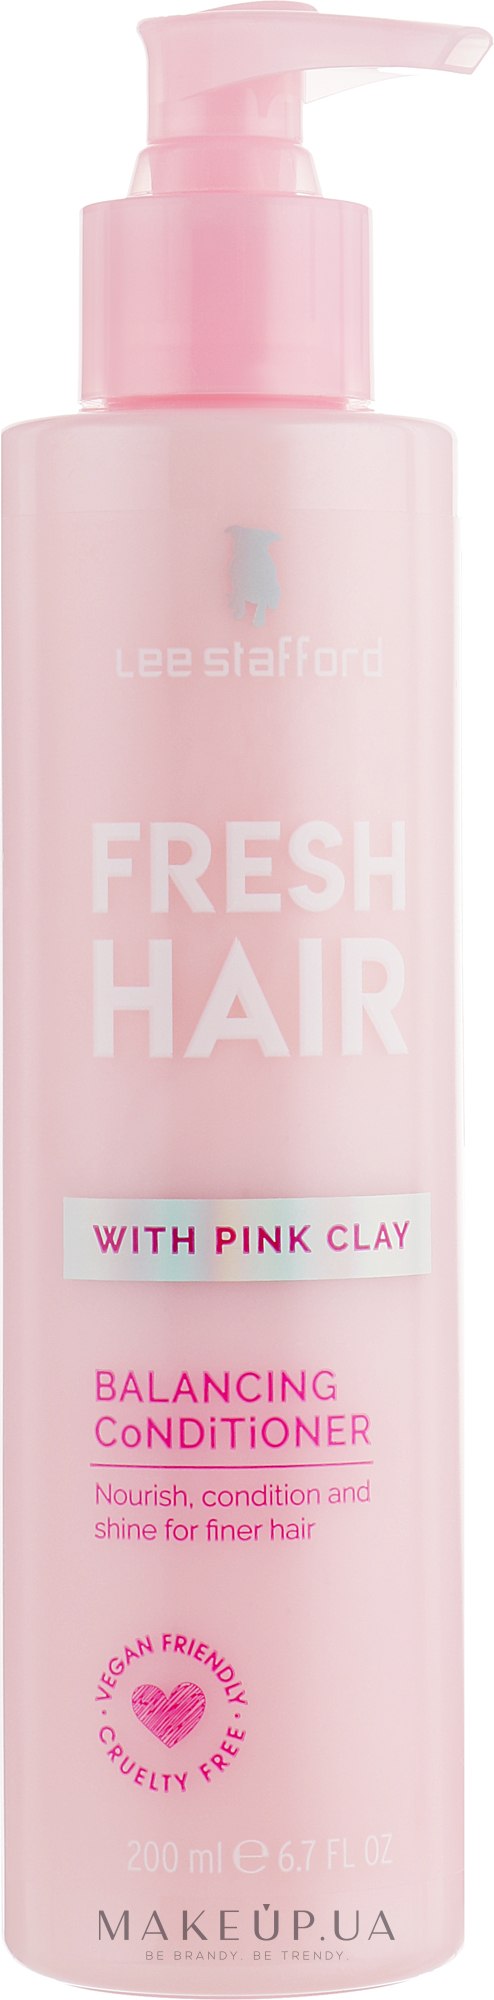 Балансирующий кондиционер с розовой глиной - Lee Stafford Fresh Hair Balancing Conditioner — фото 200ml